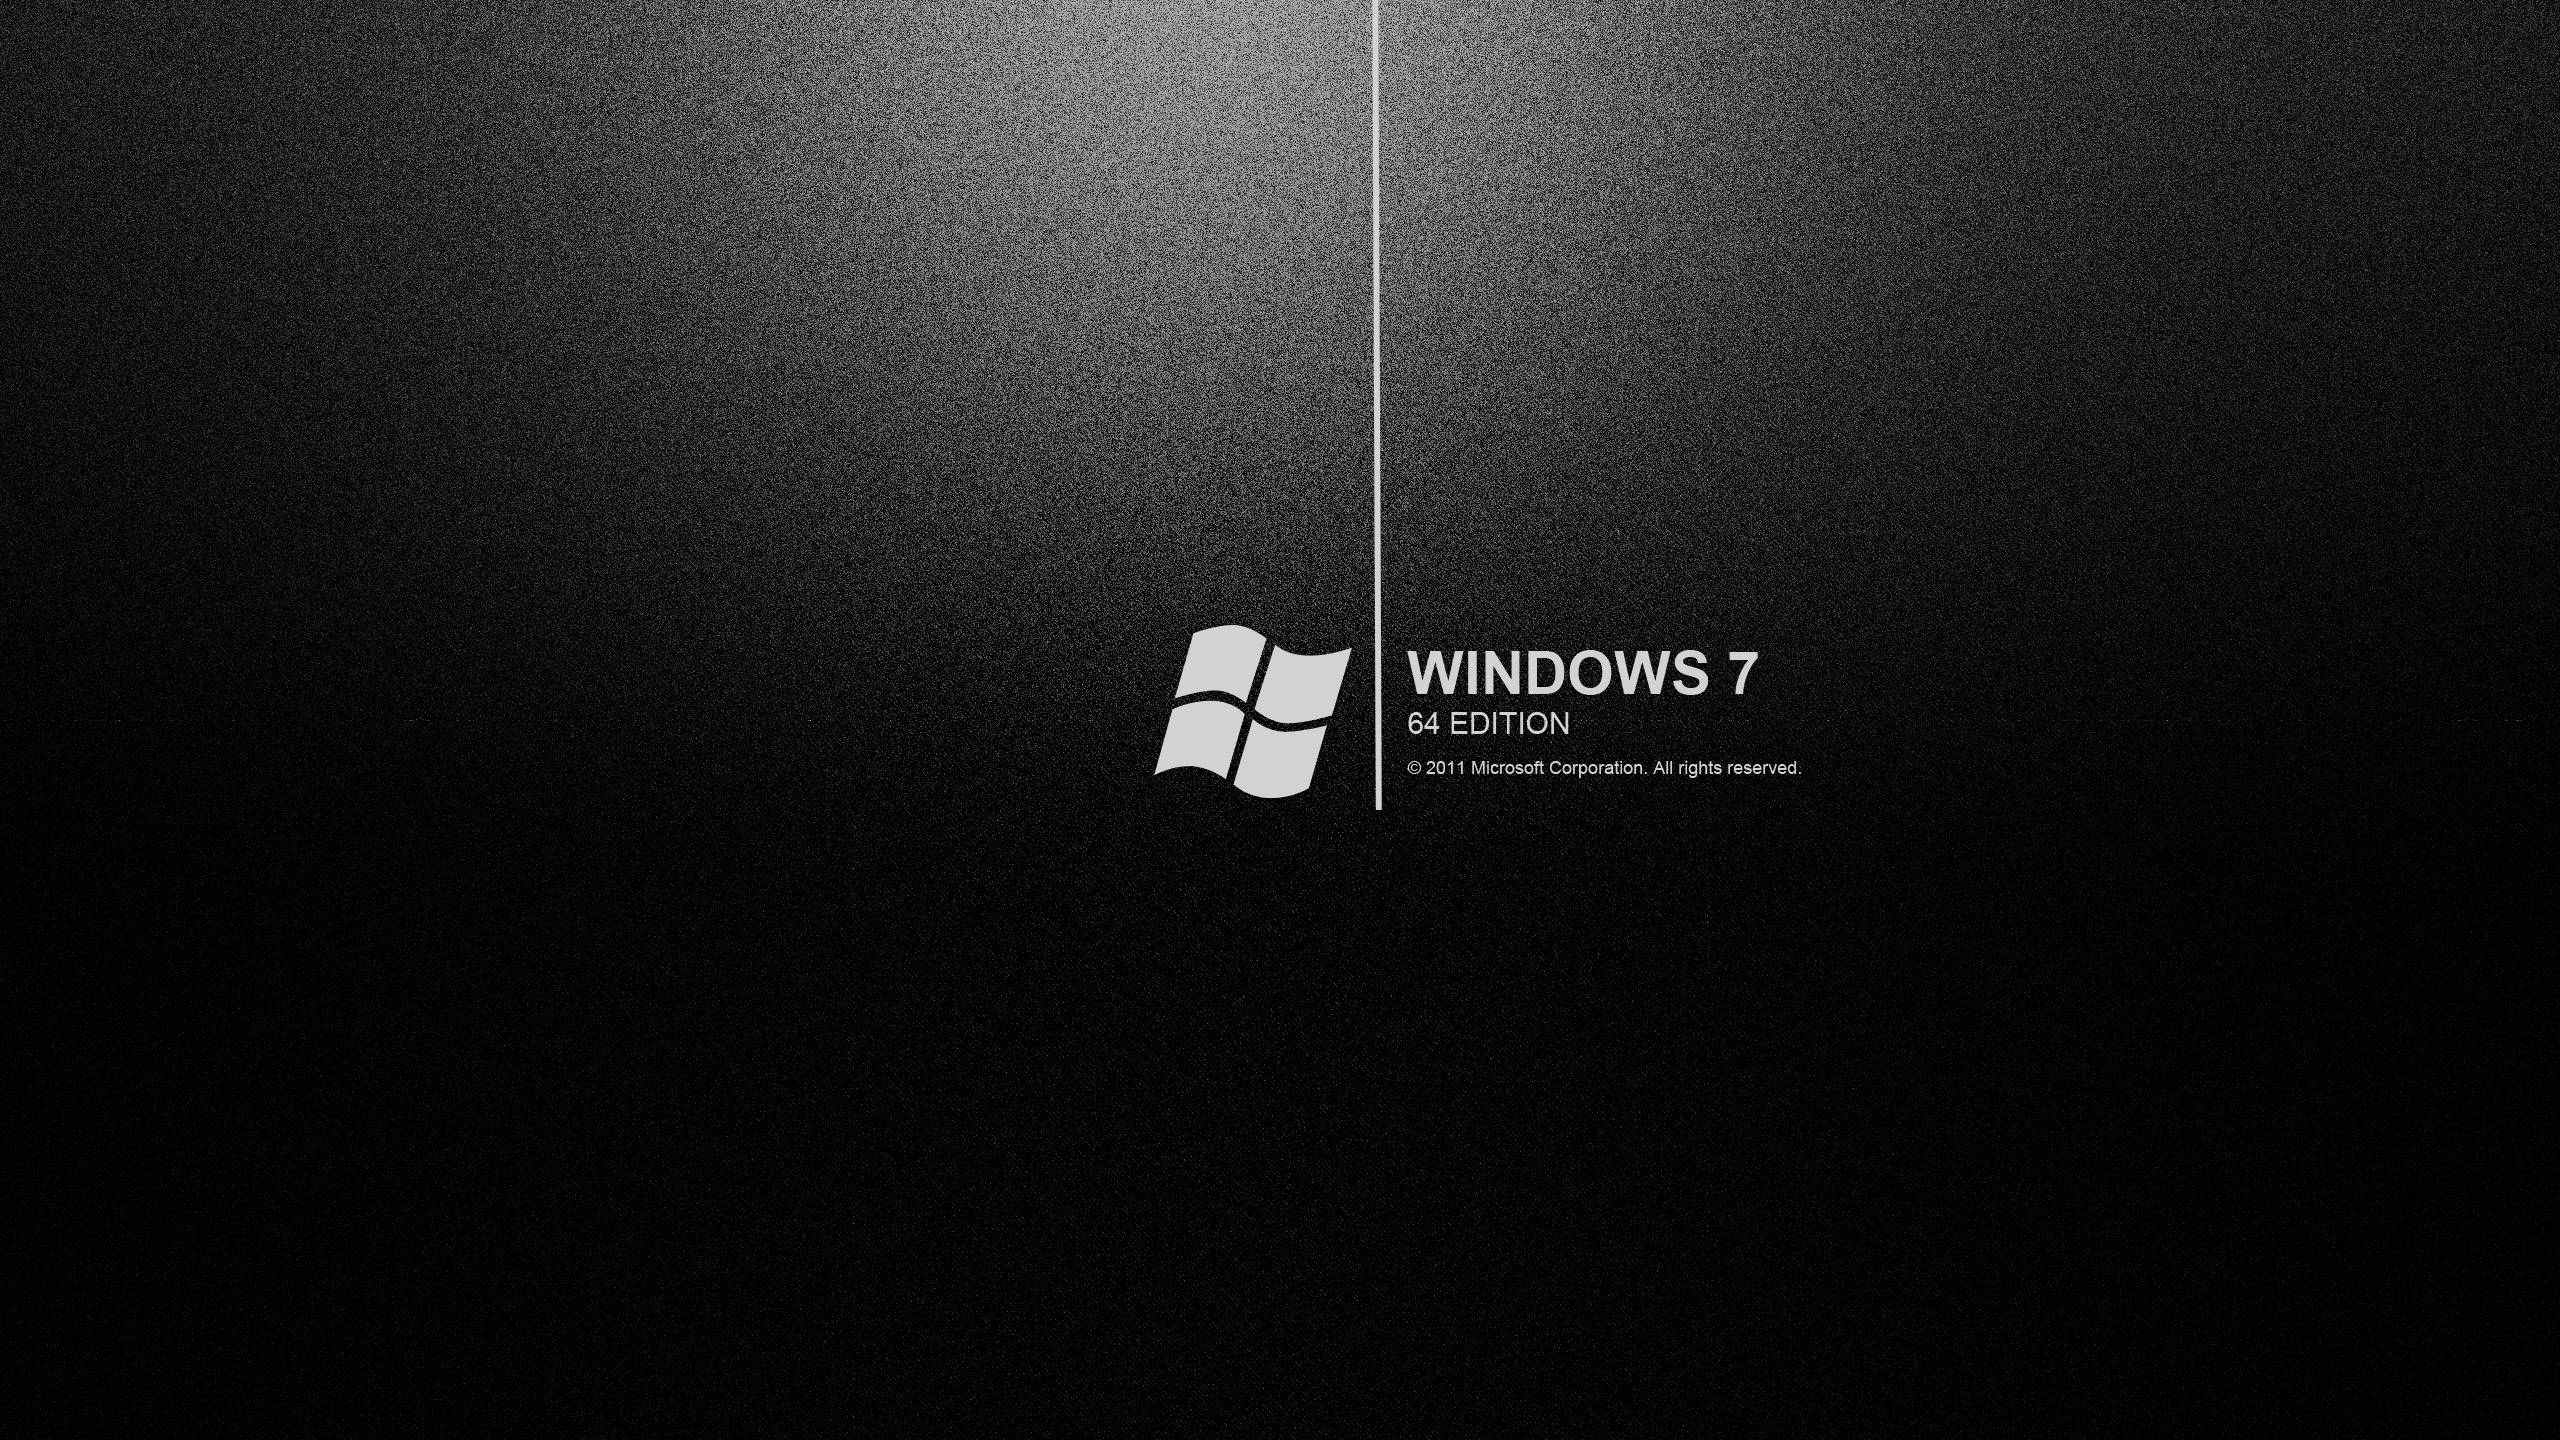 Các tùy chọn hình nền Windows 7 Black tuyệt đẹp sẽ khiến tâm trạng bạn thăng hoa. Với những hình ảnh hoàn toàn đen, đem lại cho bạn sự khác biệt và độc đáo.